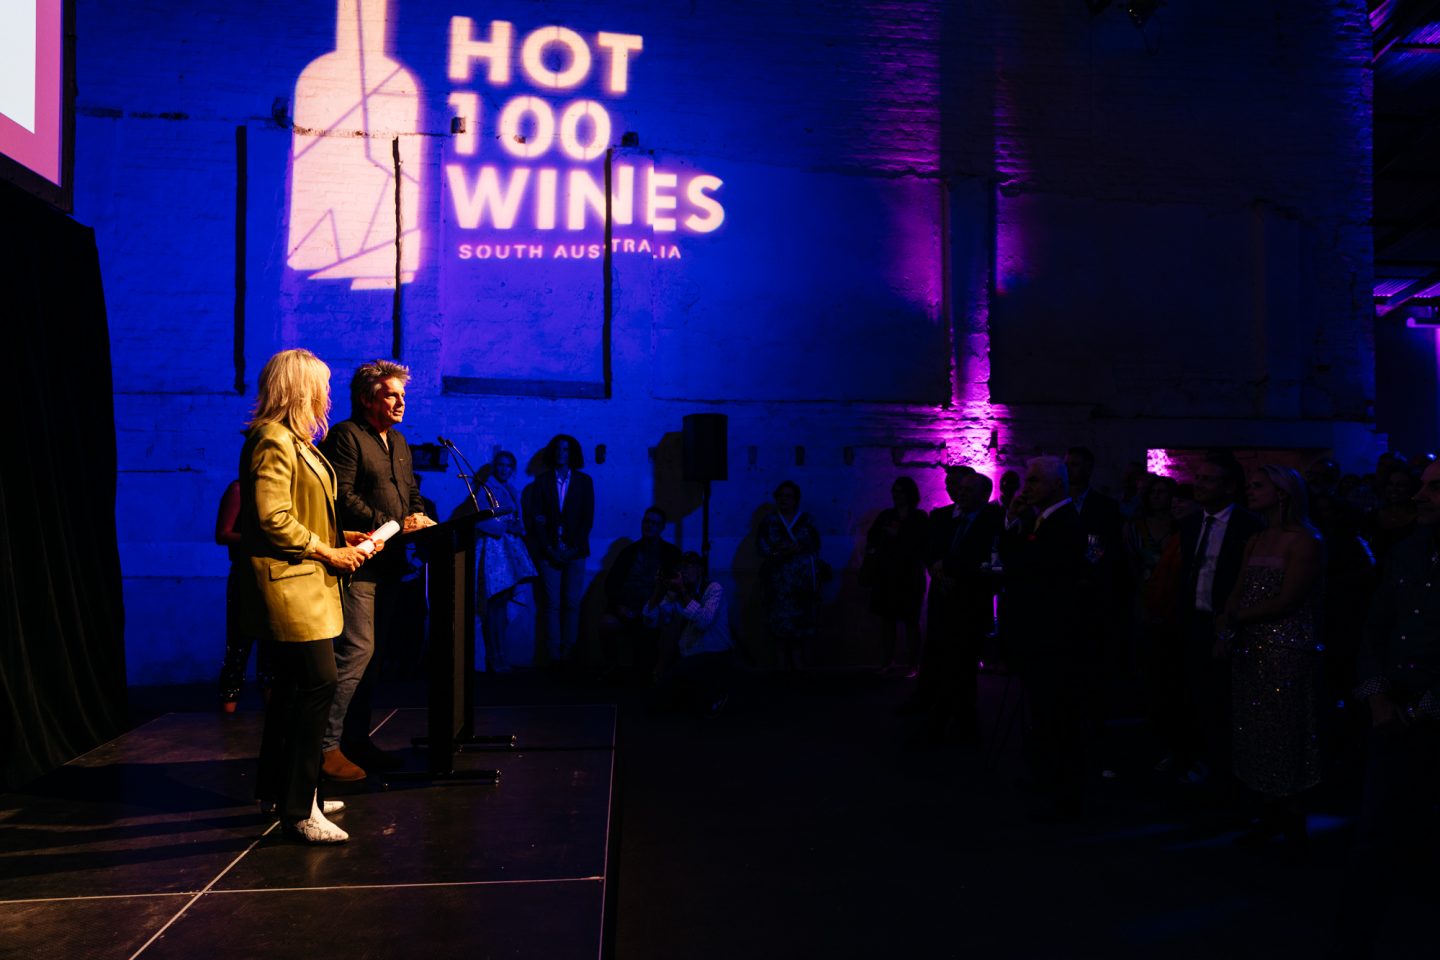 Hot 100 Wines 2019/20 winners Shut The Gate Wines